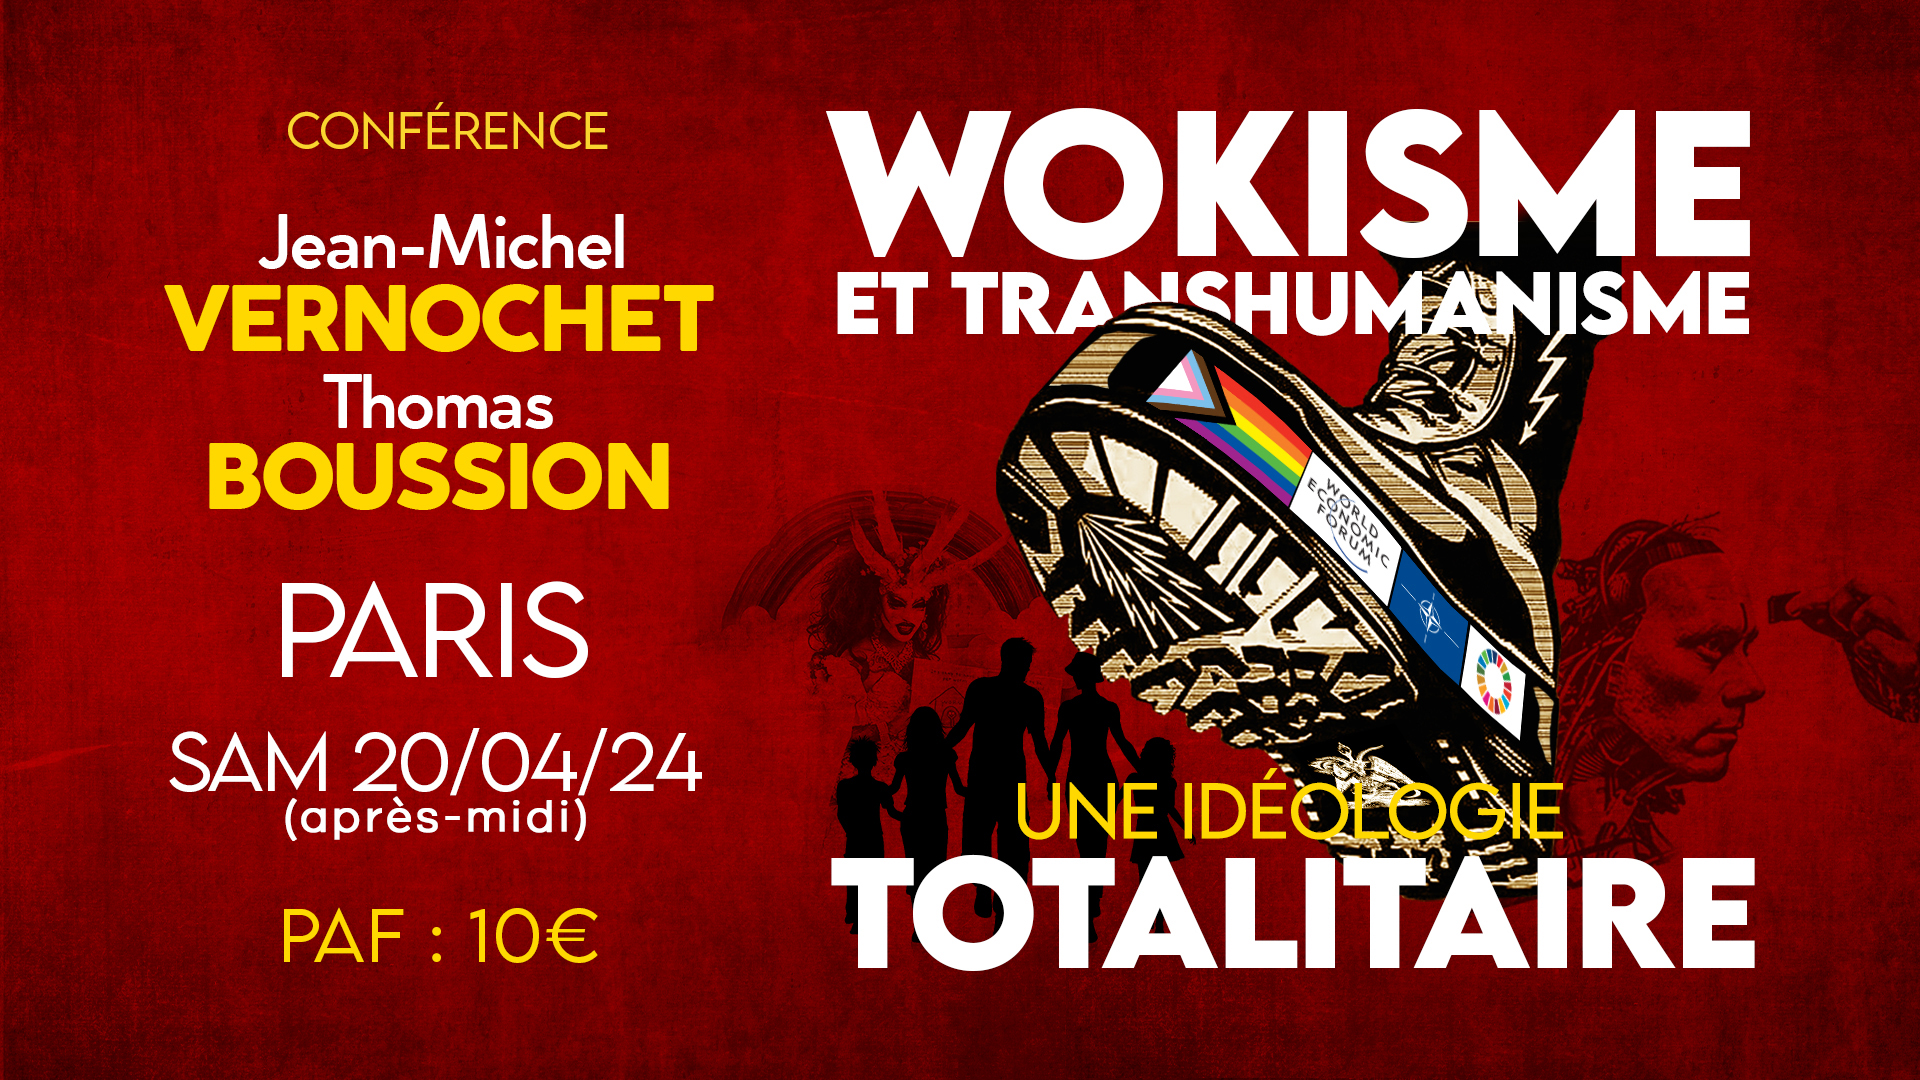 Wokisme et transhumanisme, une idéologie totalitaire – Conférence de Jean-Michel Vernochet et Thomas Boussion à Paris